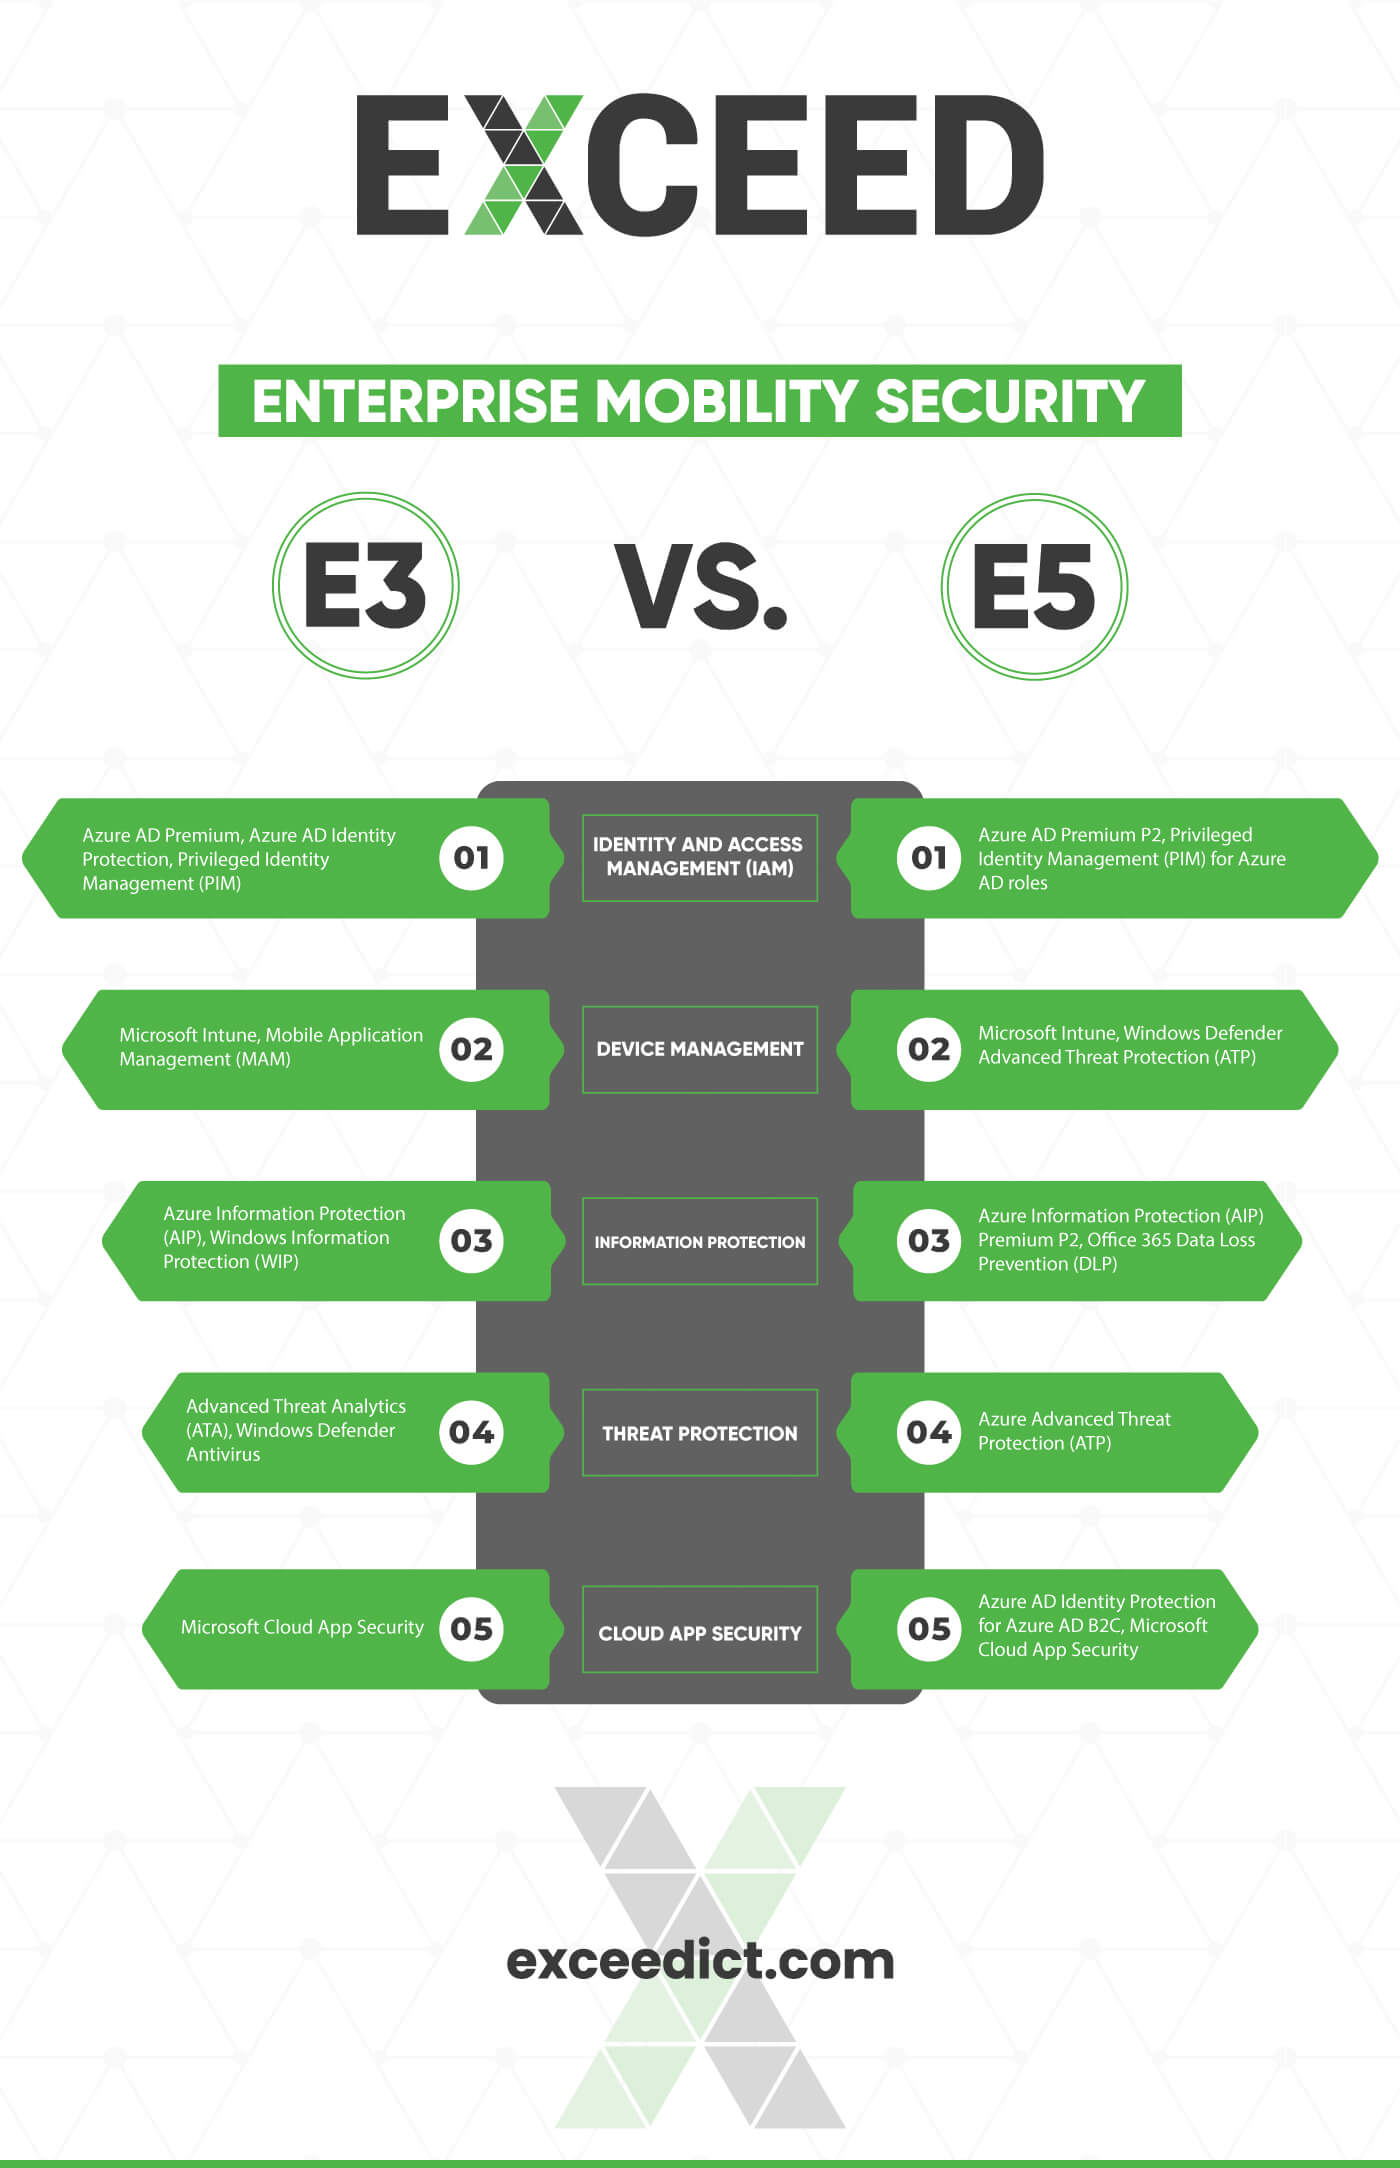 Enterprise Mobility Security E3 vs E5